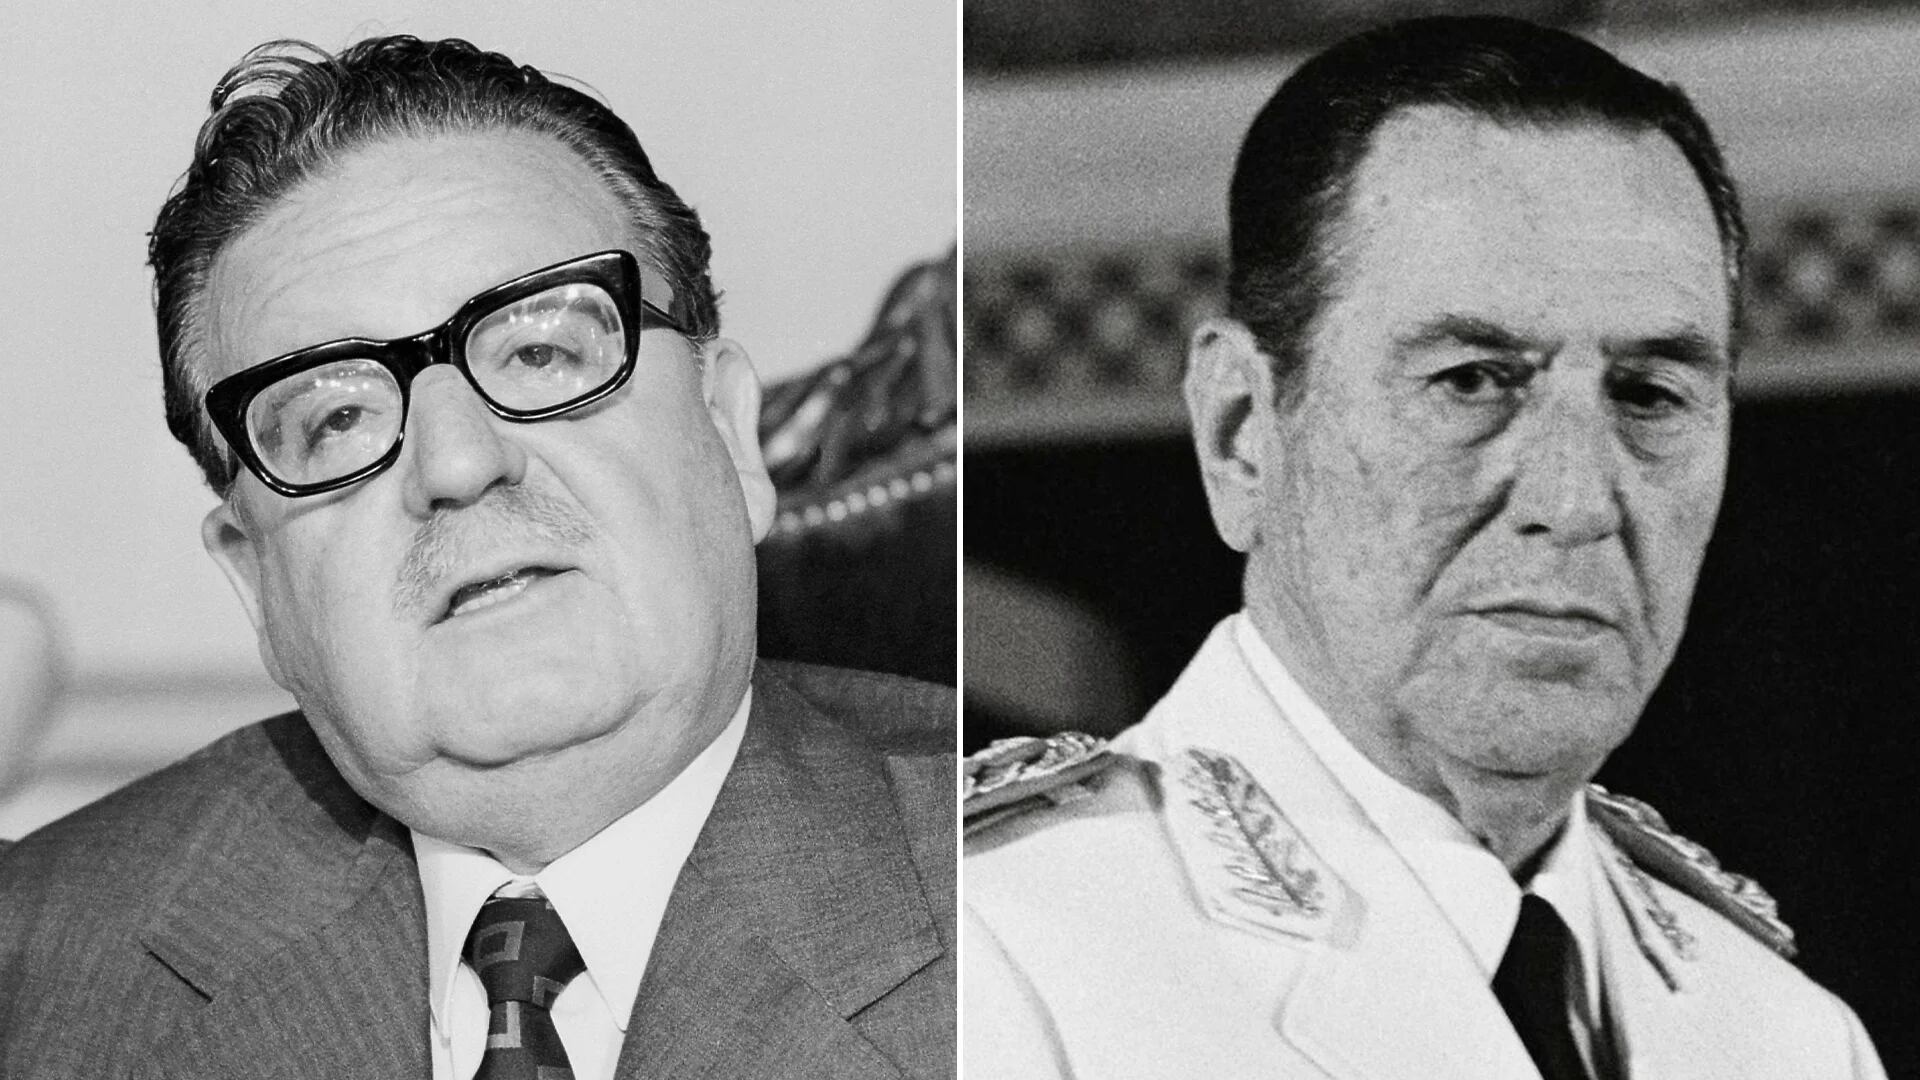 Histórico: en 1973, Perón envió dos emisarios para advertir a Allende sobre la conspiración de Pinochet